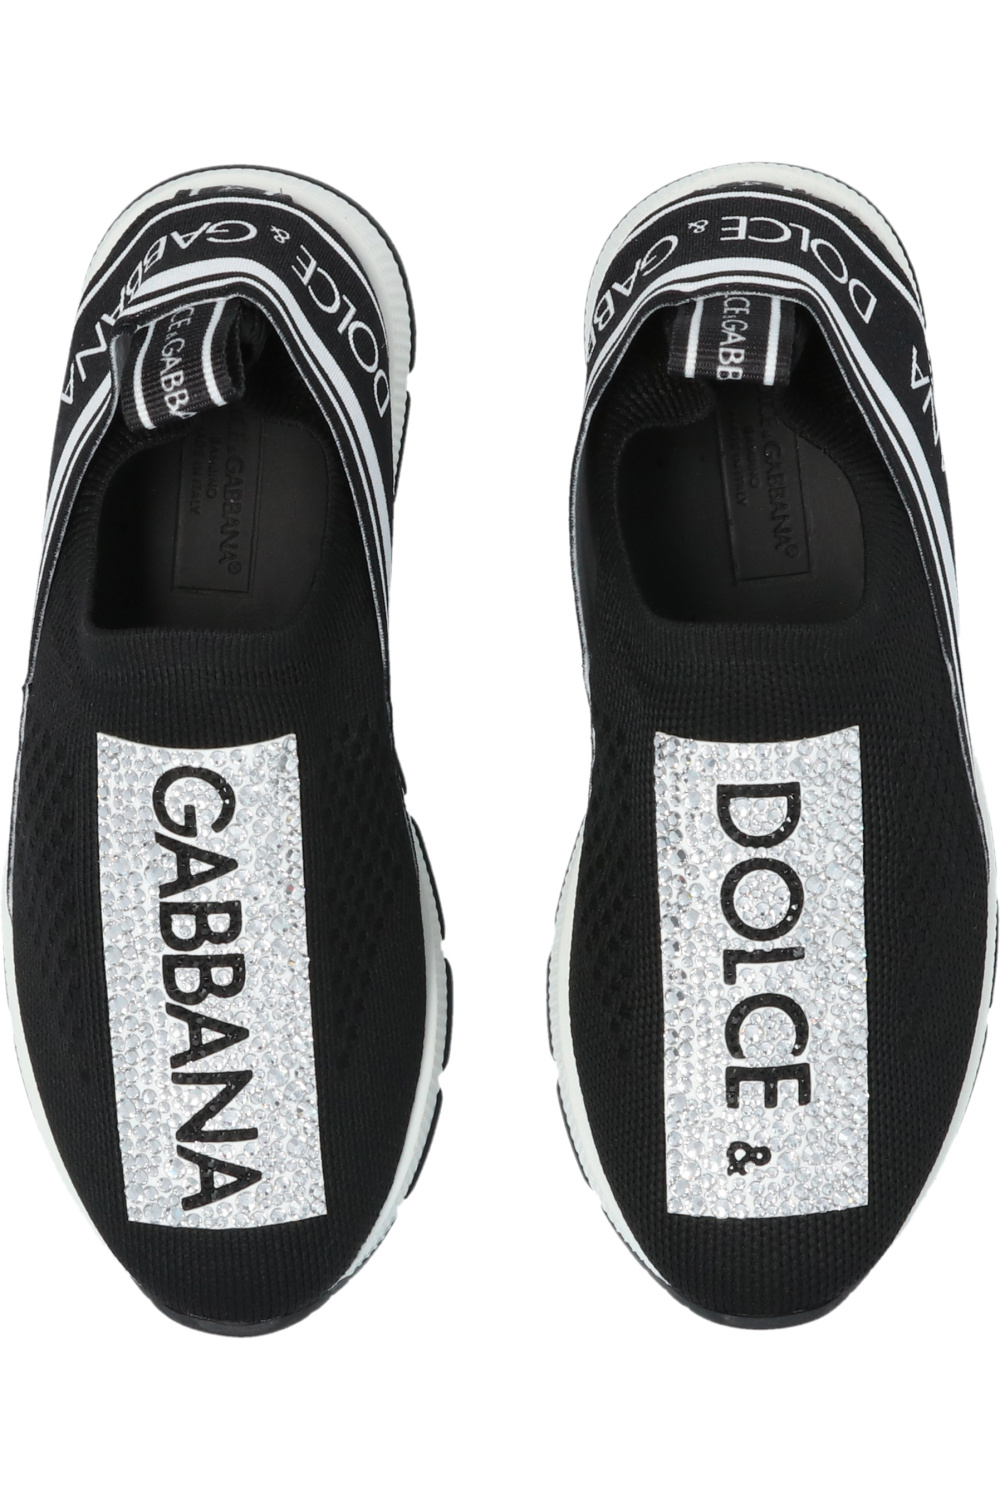 Dolce & Gabbana Kids DG Bellezza T-shirt Vend veste dolce gabbana très bonne état taille xl